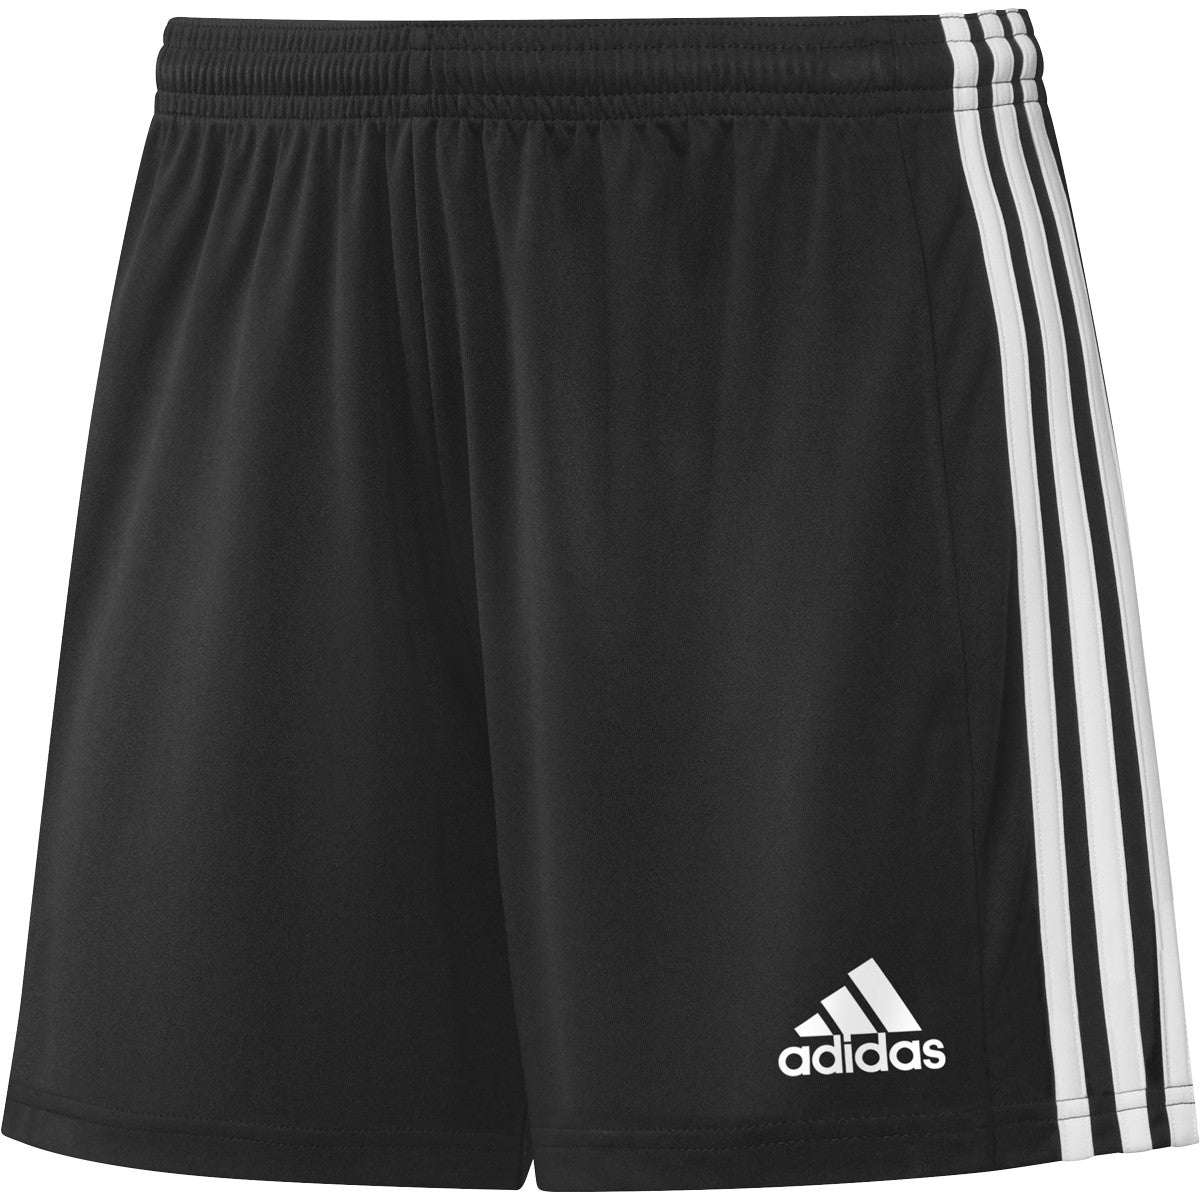 adidas Womens Squadra 21 Short | GN5780 Shorts Adidas X-Small Black/White 